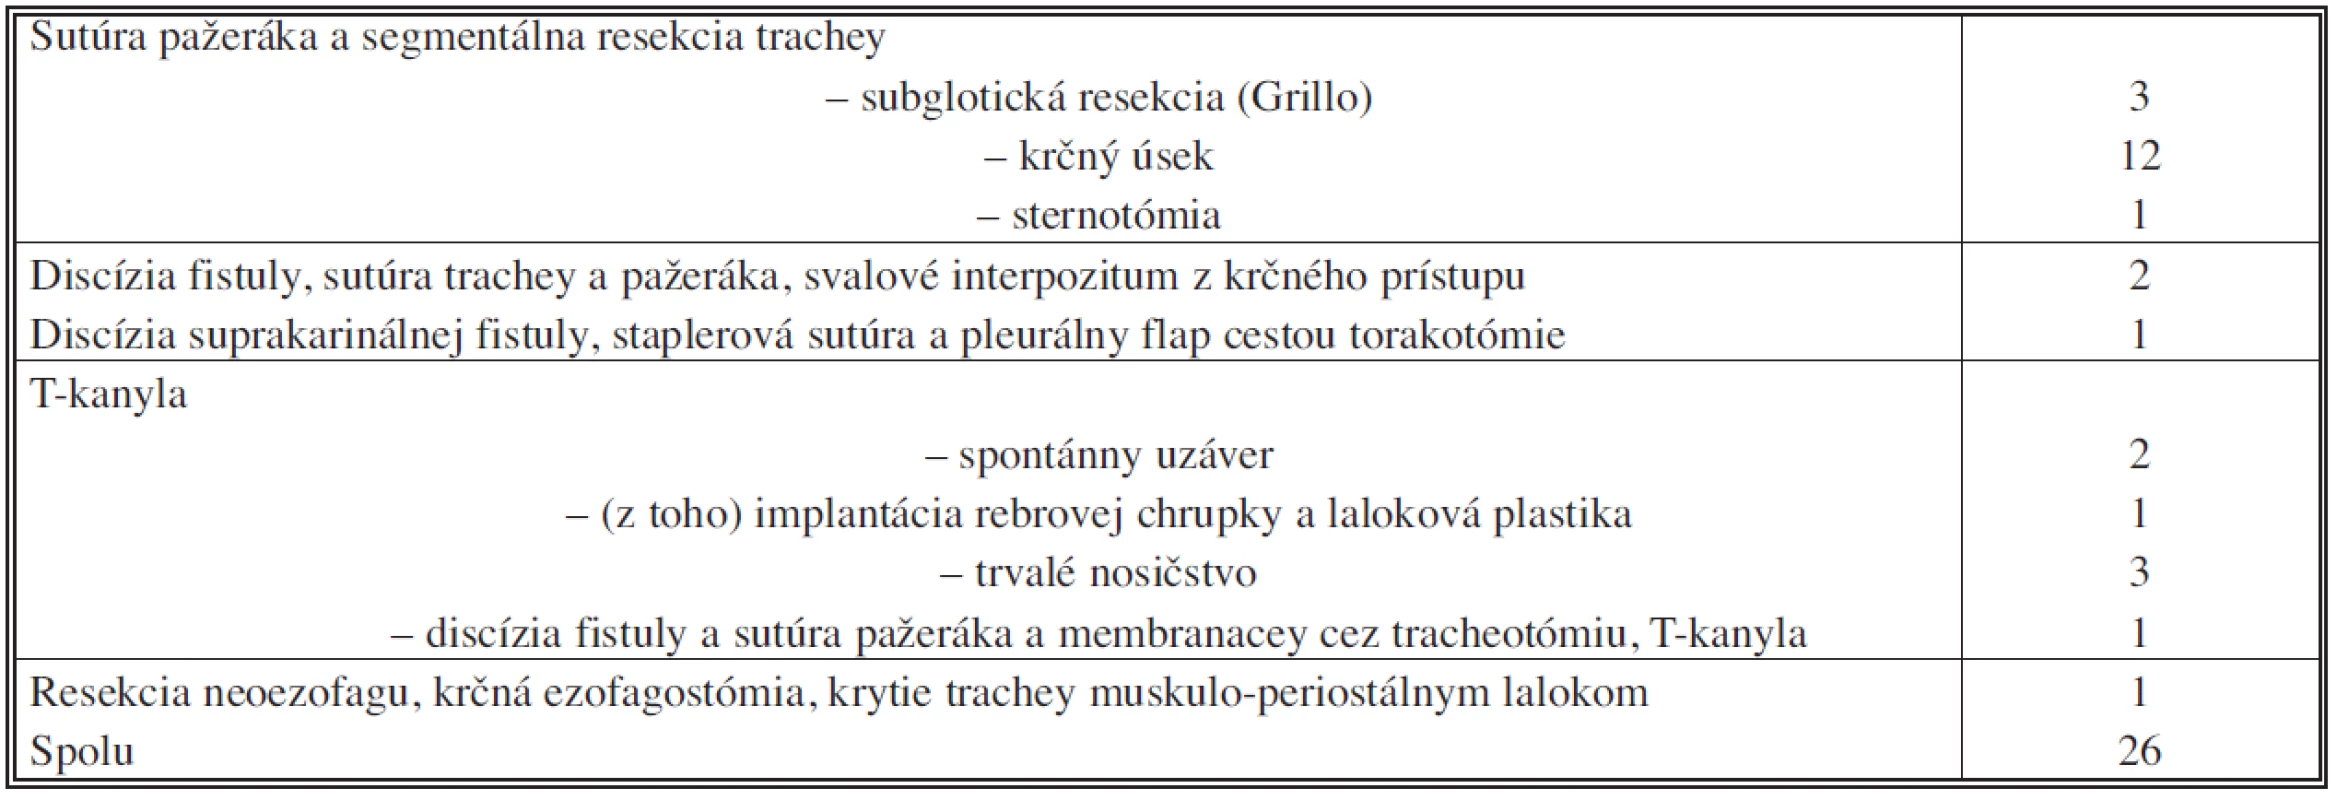 Chirurgická liečba tracheoezofageálnych fistúl v našom súbore
Tab. 2. Surgical management of tracheoesophageal fistules in the subject group